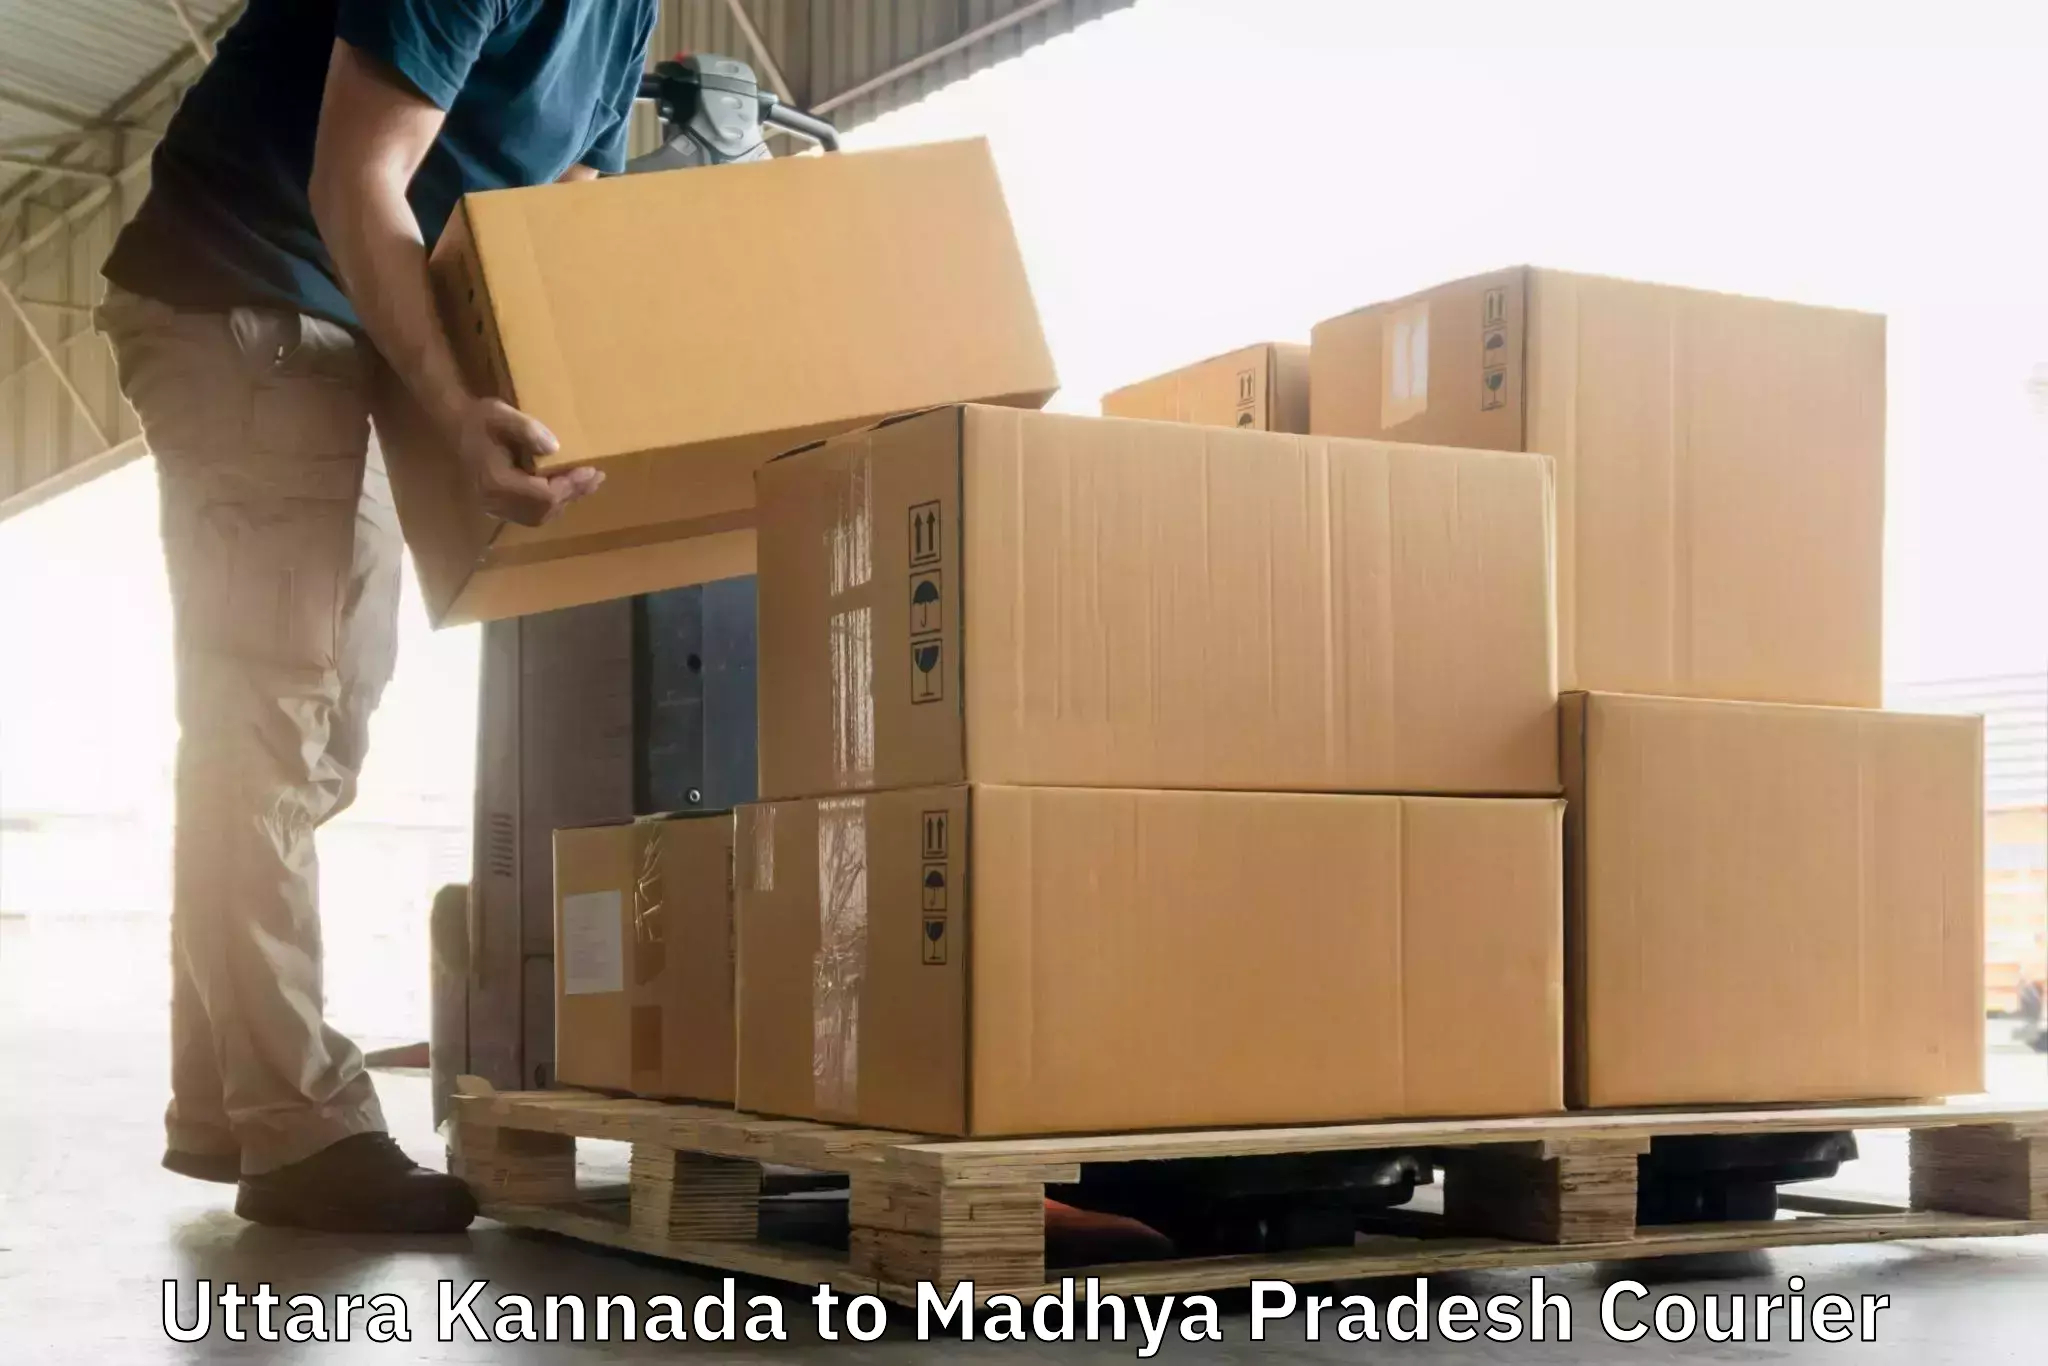 Tech-enabled shipping Uttara Kannada to BHEL Bhopal